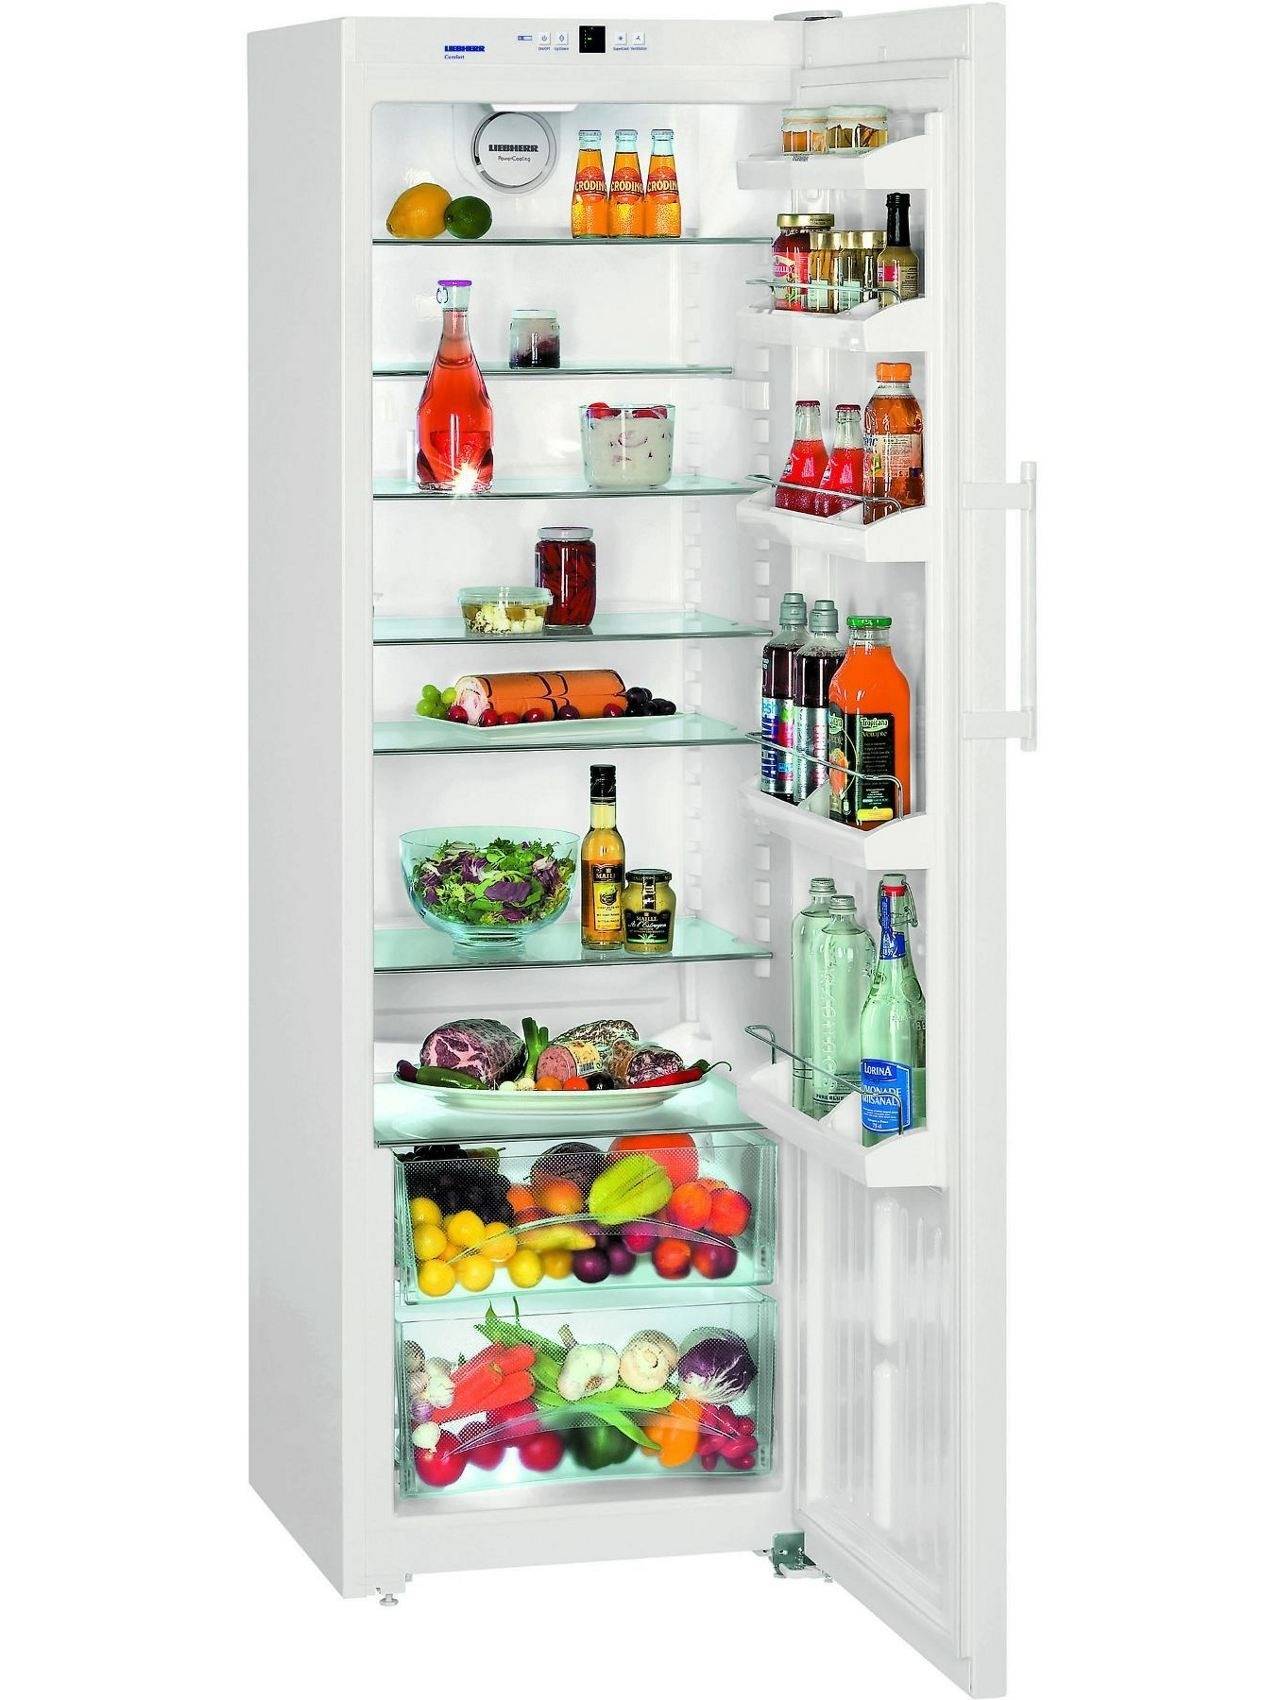 Выбираем маленький холодильник, с большой ответственностью.